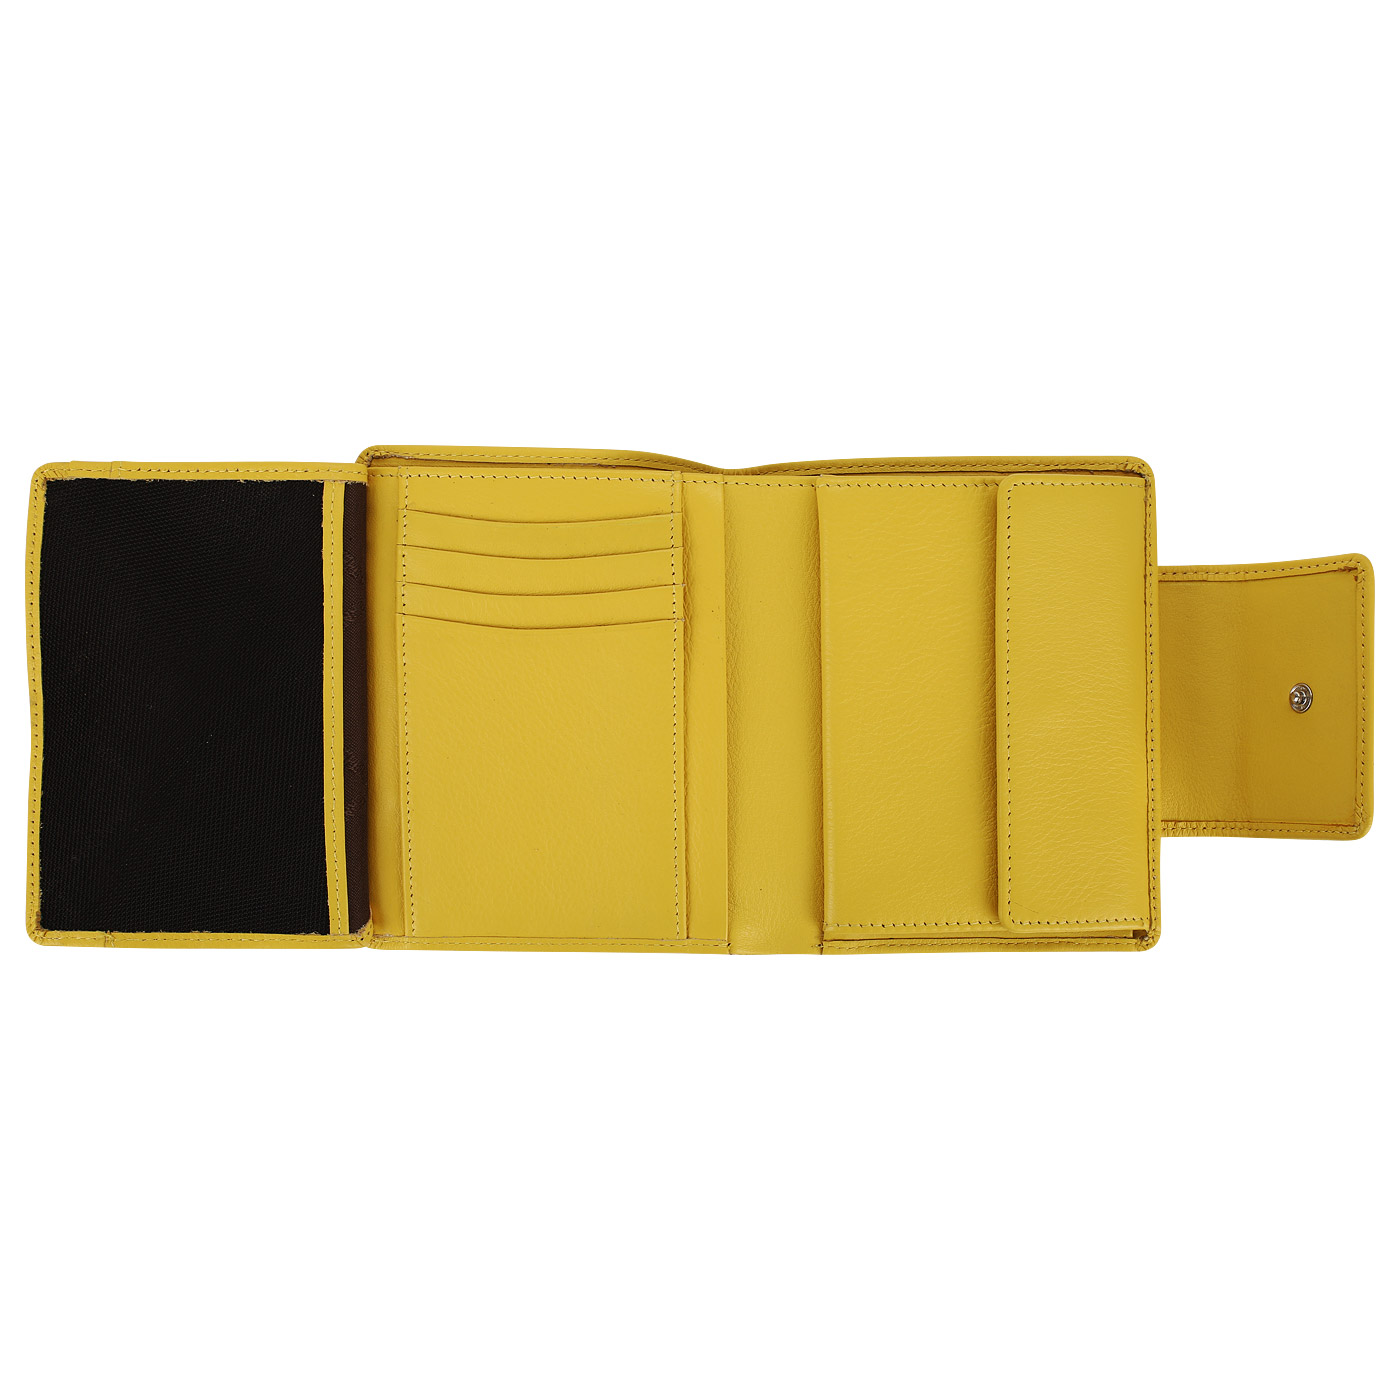 Желтый кожаный кошелек Braun Buffel Miami